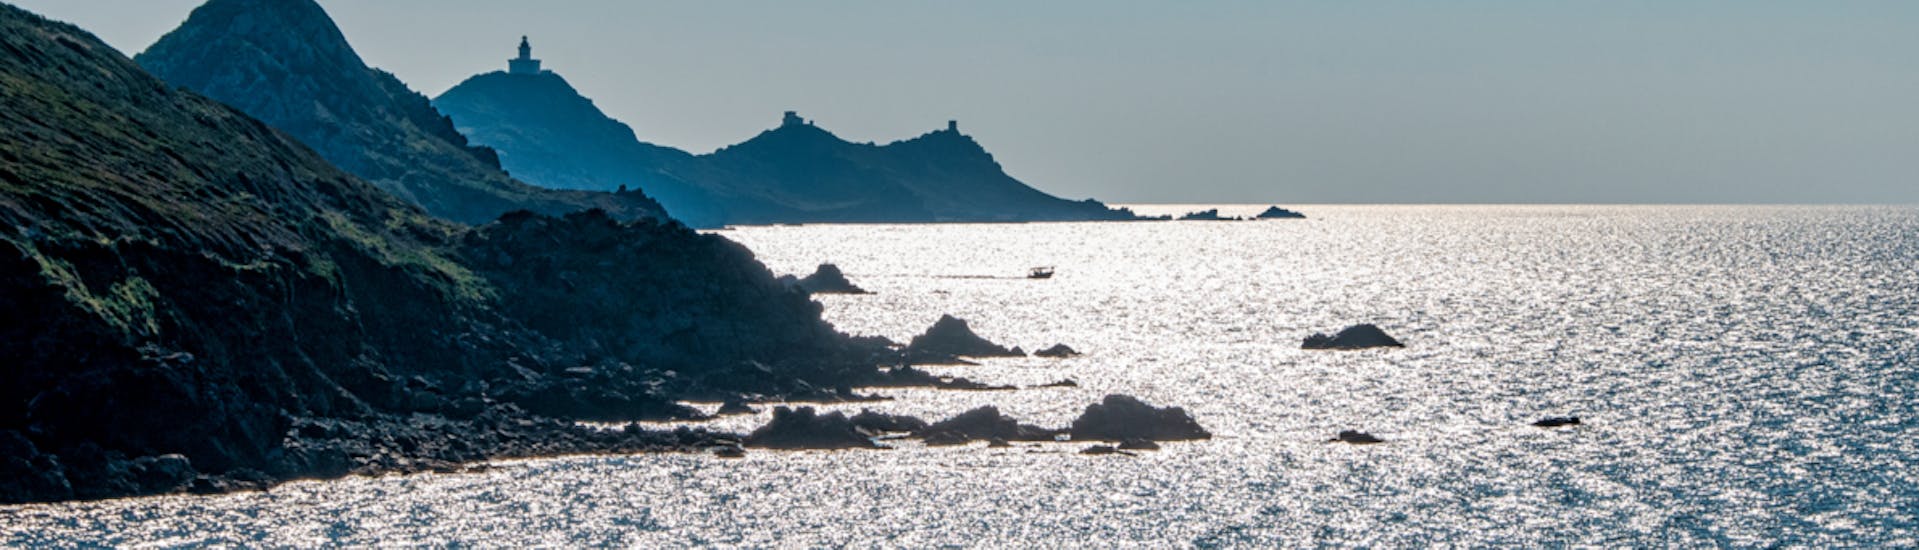 Vue de l'île de Mezumare lors de l'excursion en bateau d'Ajaccio et Porticcio vers les îles Sanguinaires.